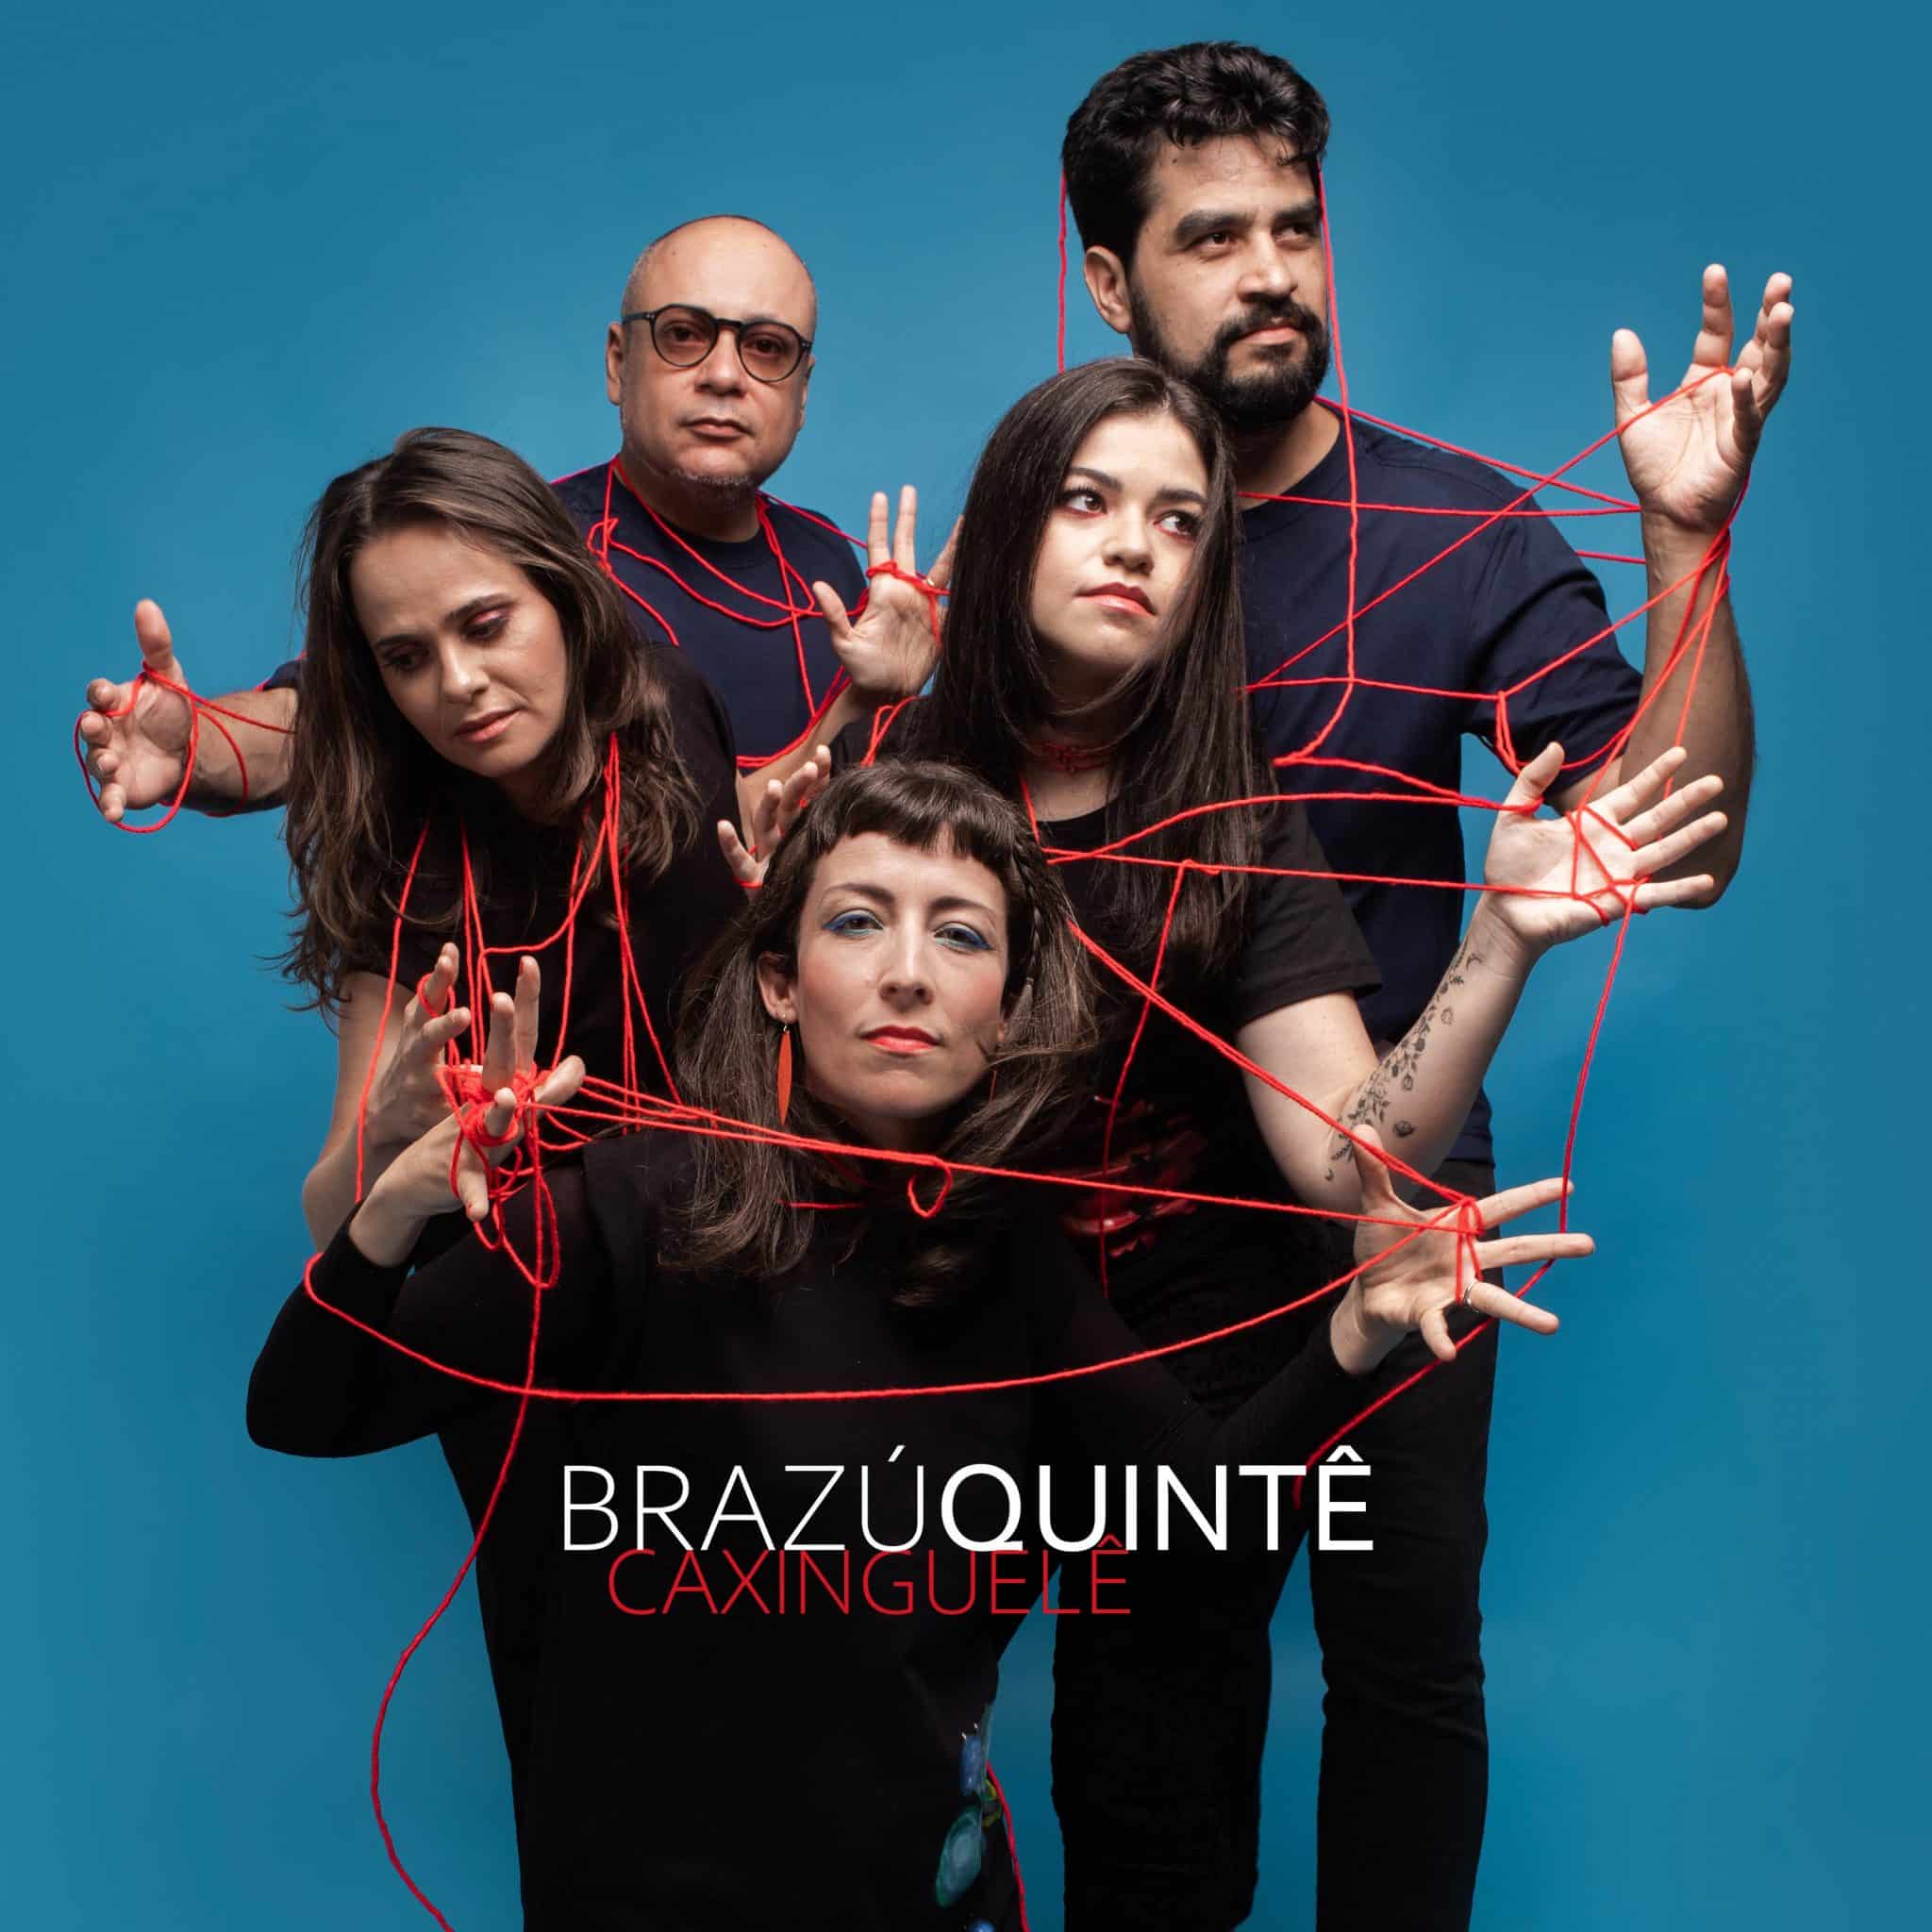 revistaprosaversoearte.com - Brazú Quintê lança single ‘Caxinguelê’